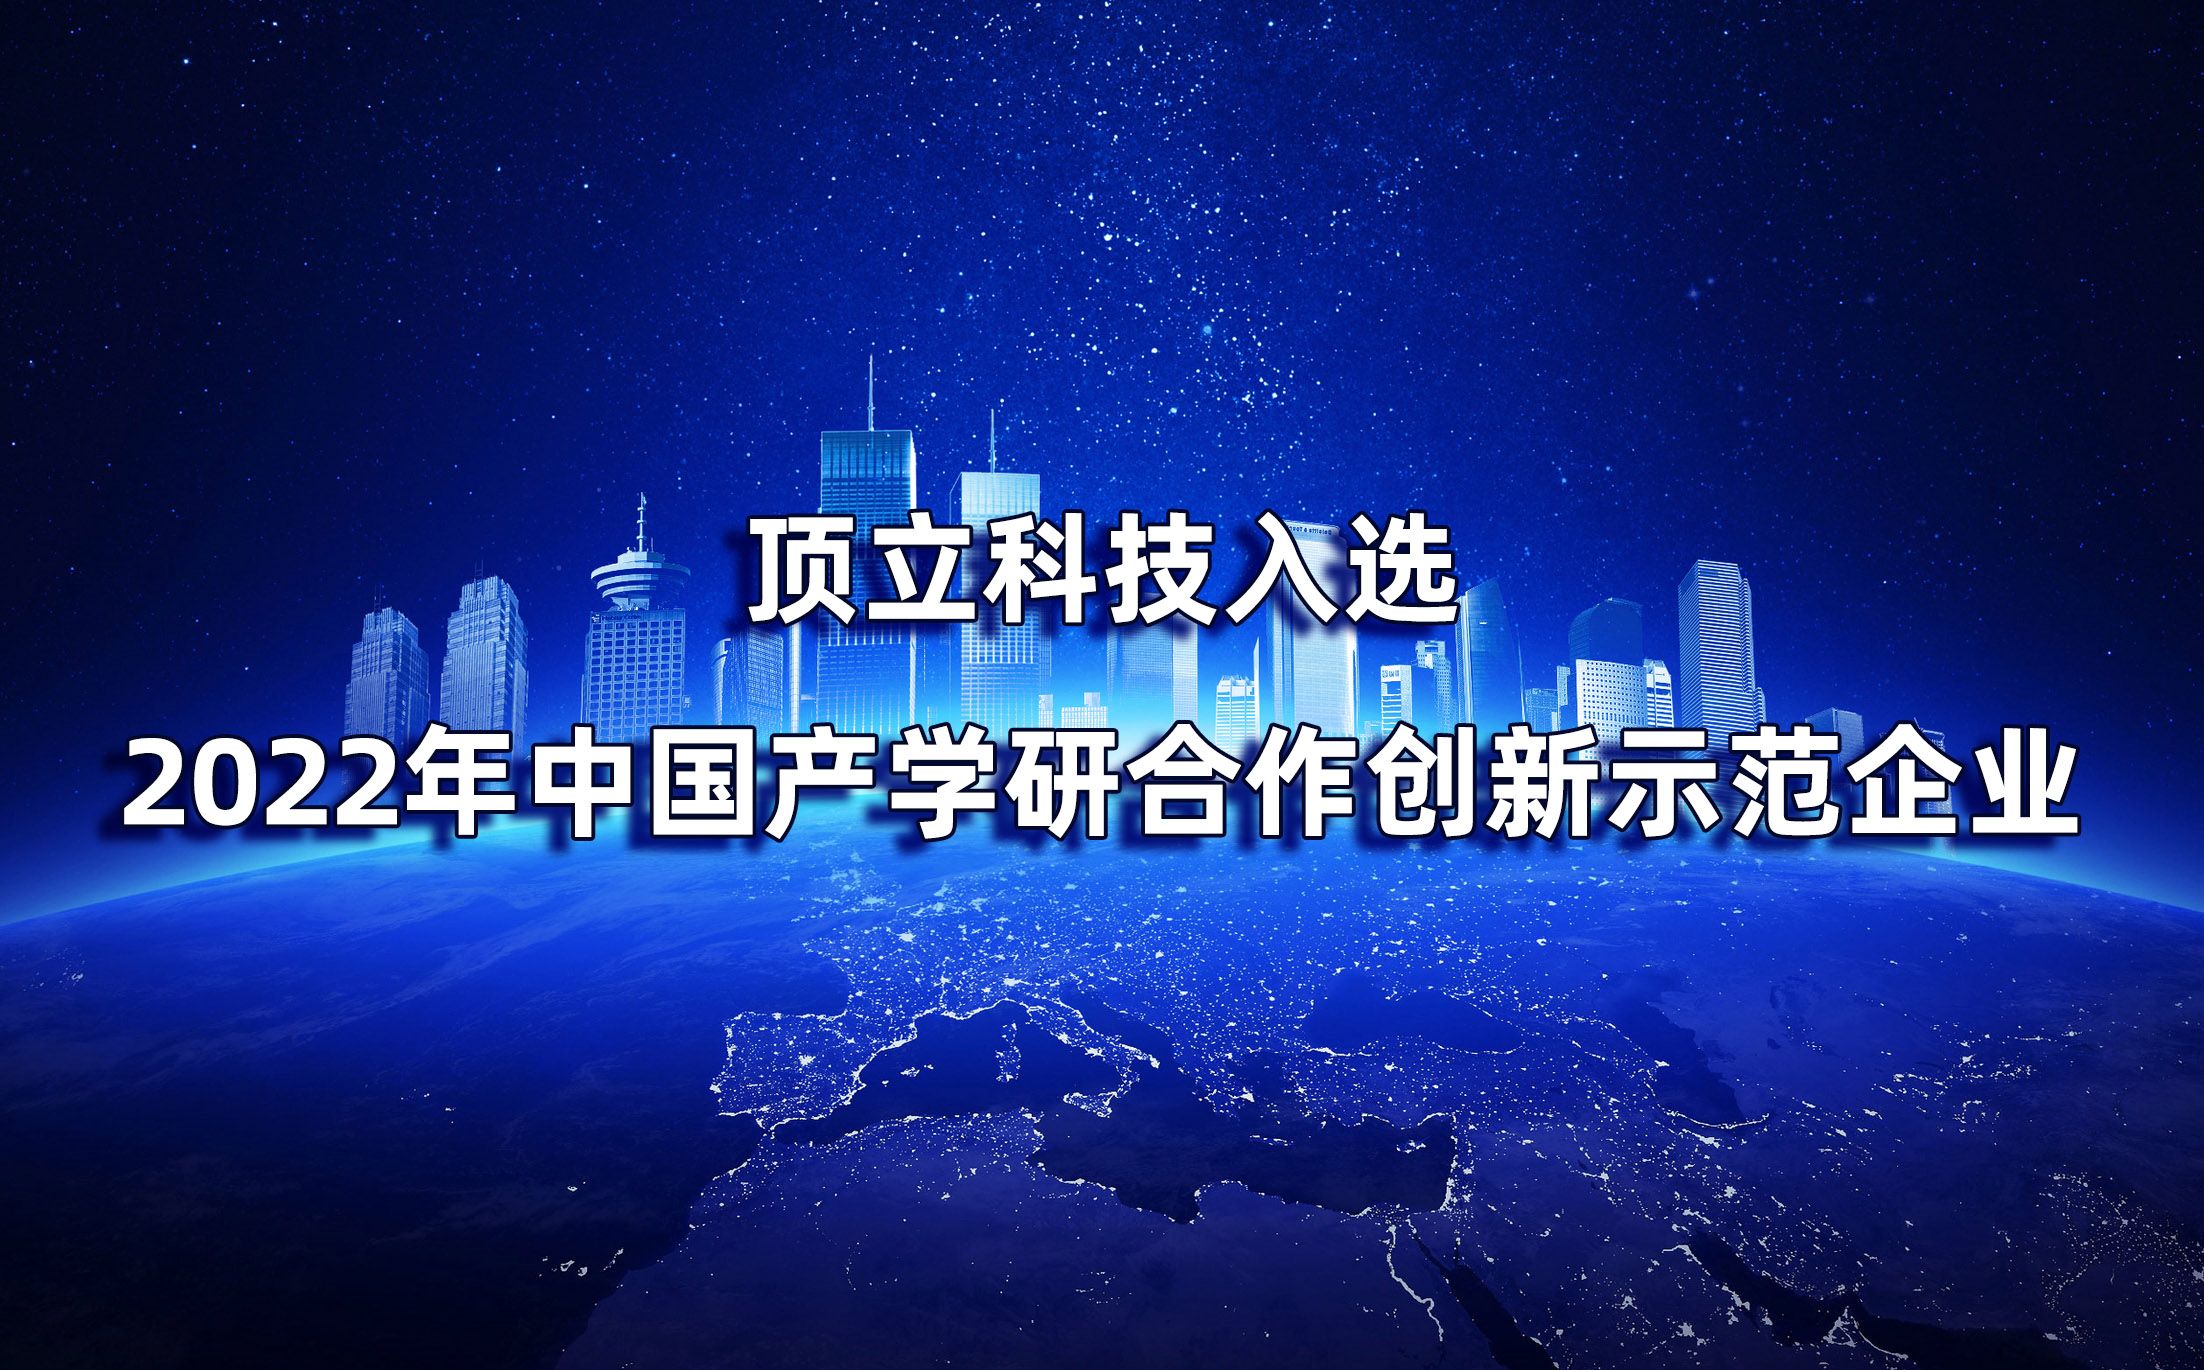 湖南僅2家|頂立科技入選2022年中國產學研合作創新示范企業